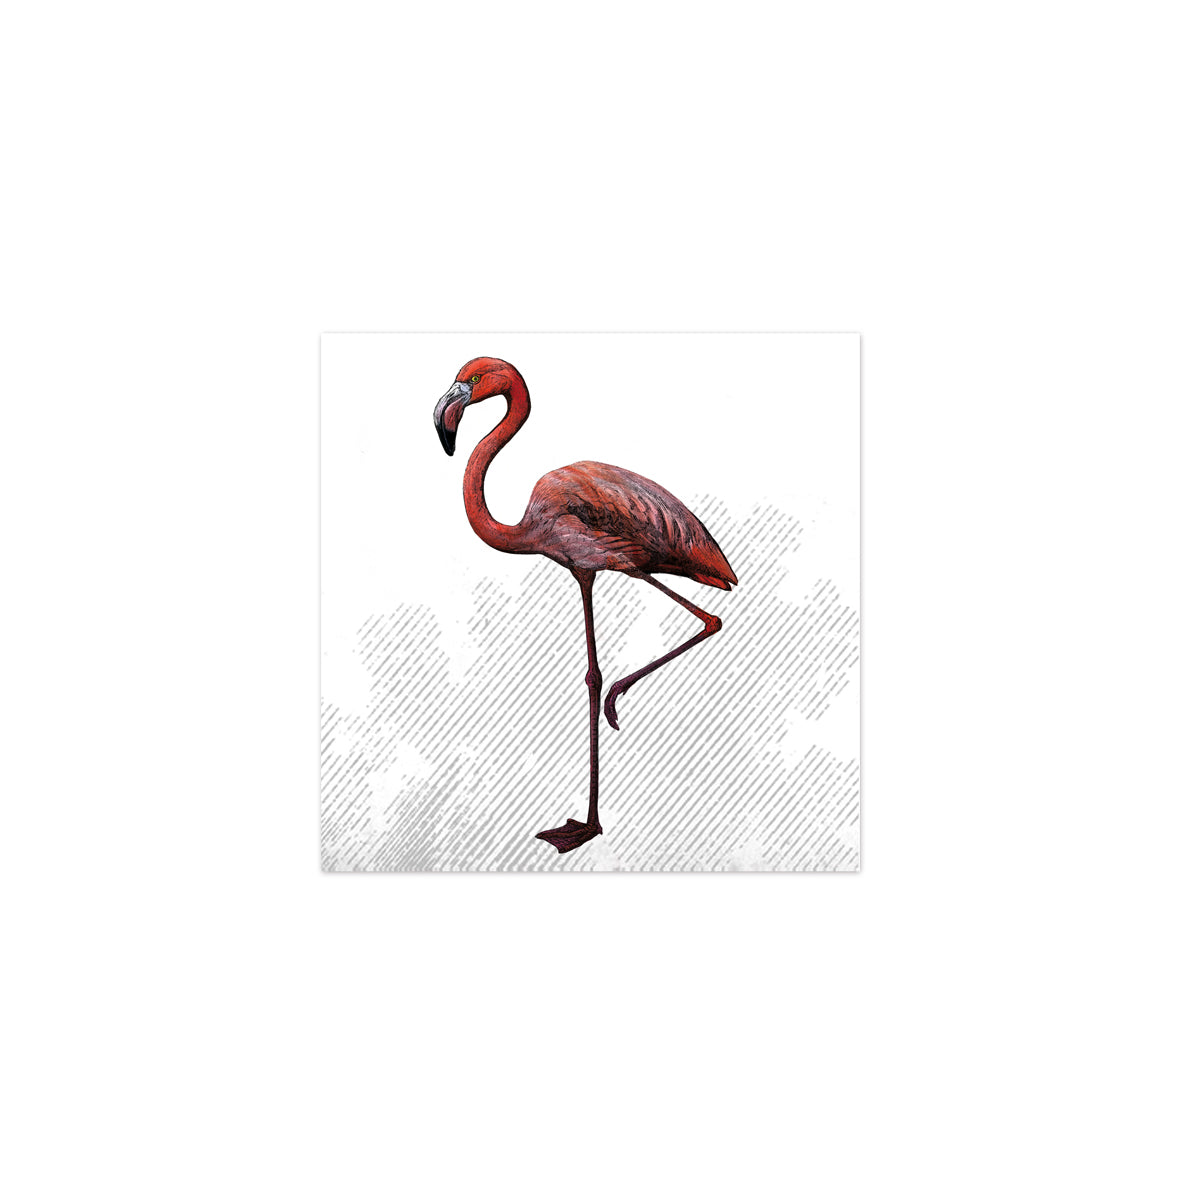 BOUBOUKI Fliesenaufkleber Flamingo